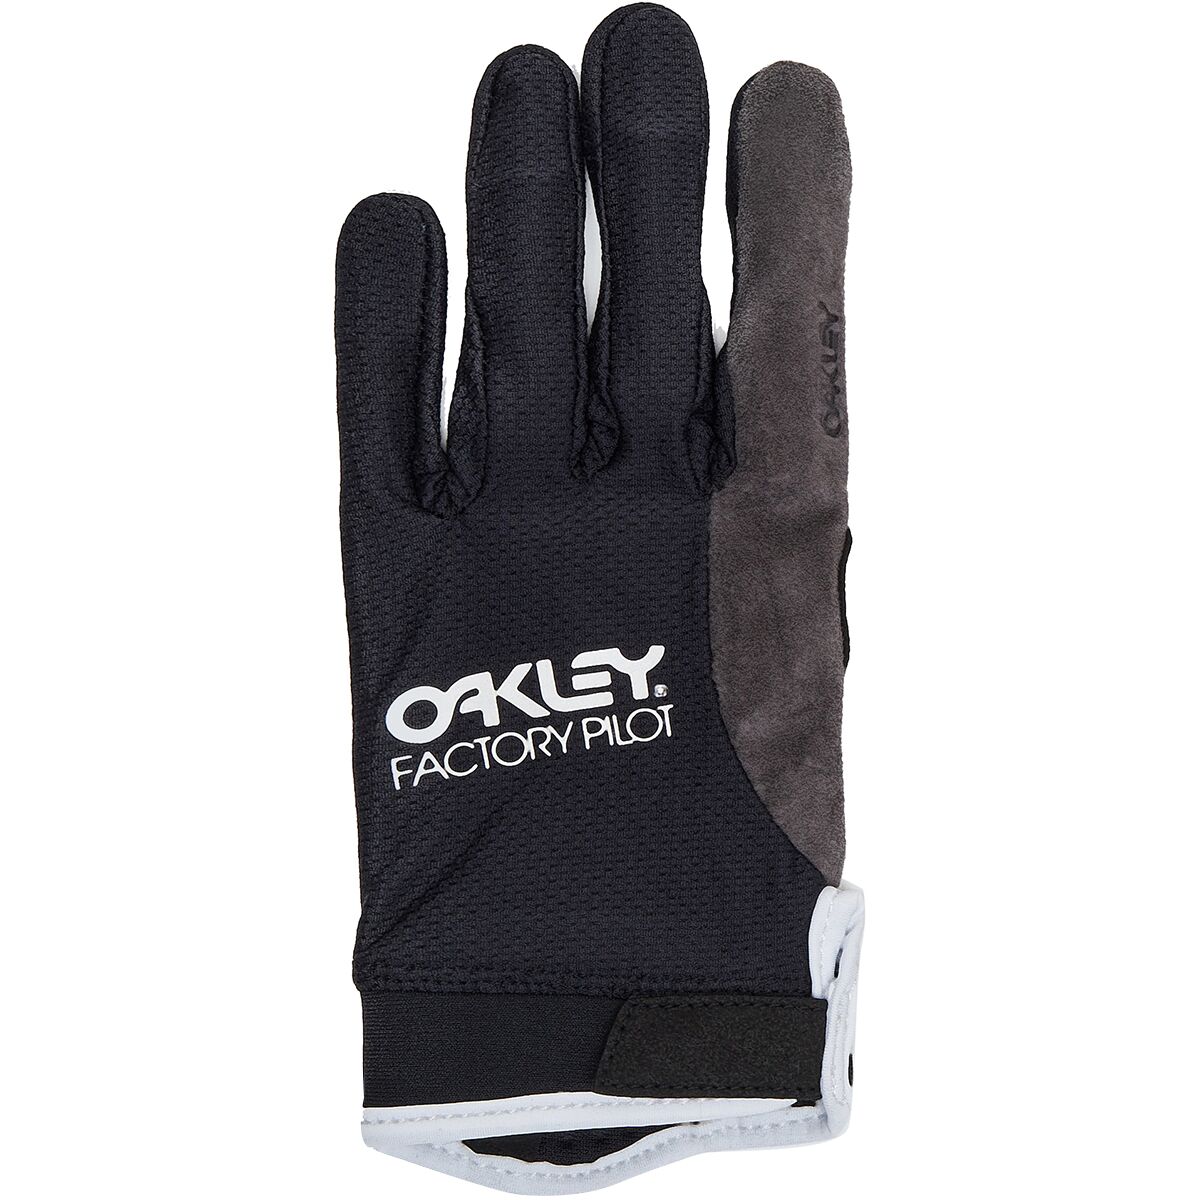 Oakley All Mountain MTB Glove - Men's